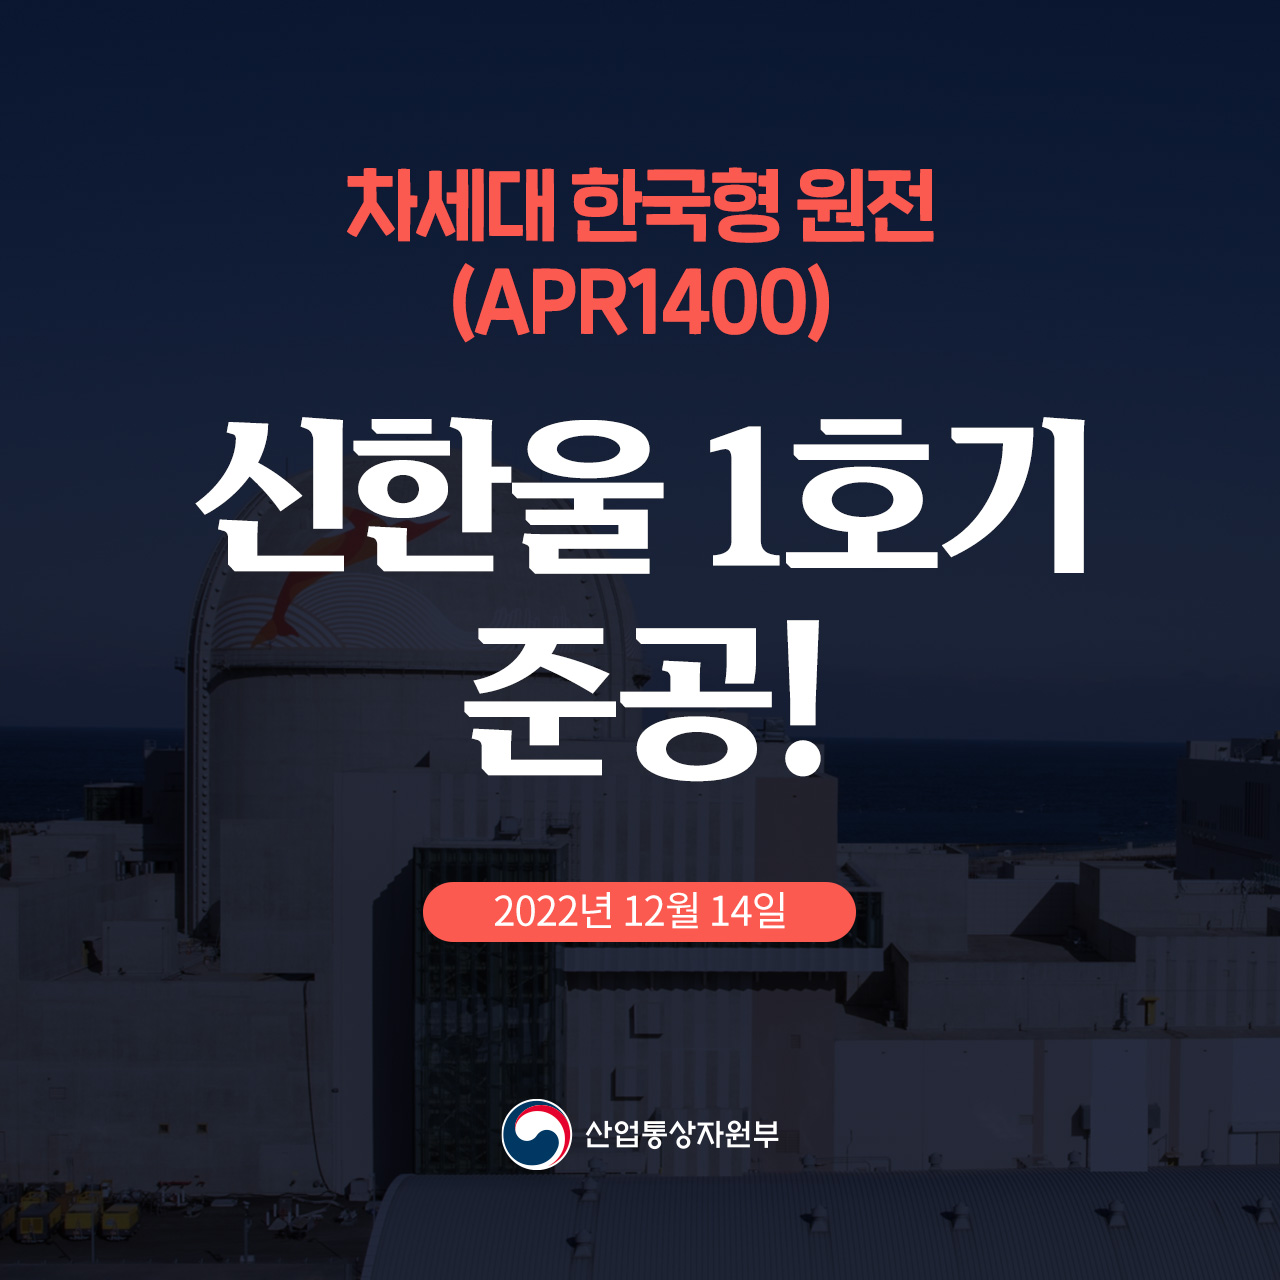 차세대 한국형 원전(APR1400) 신한울 1호기 준공 2022년 12월 14일